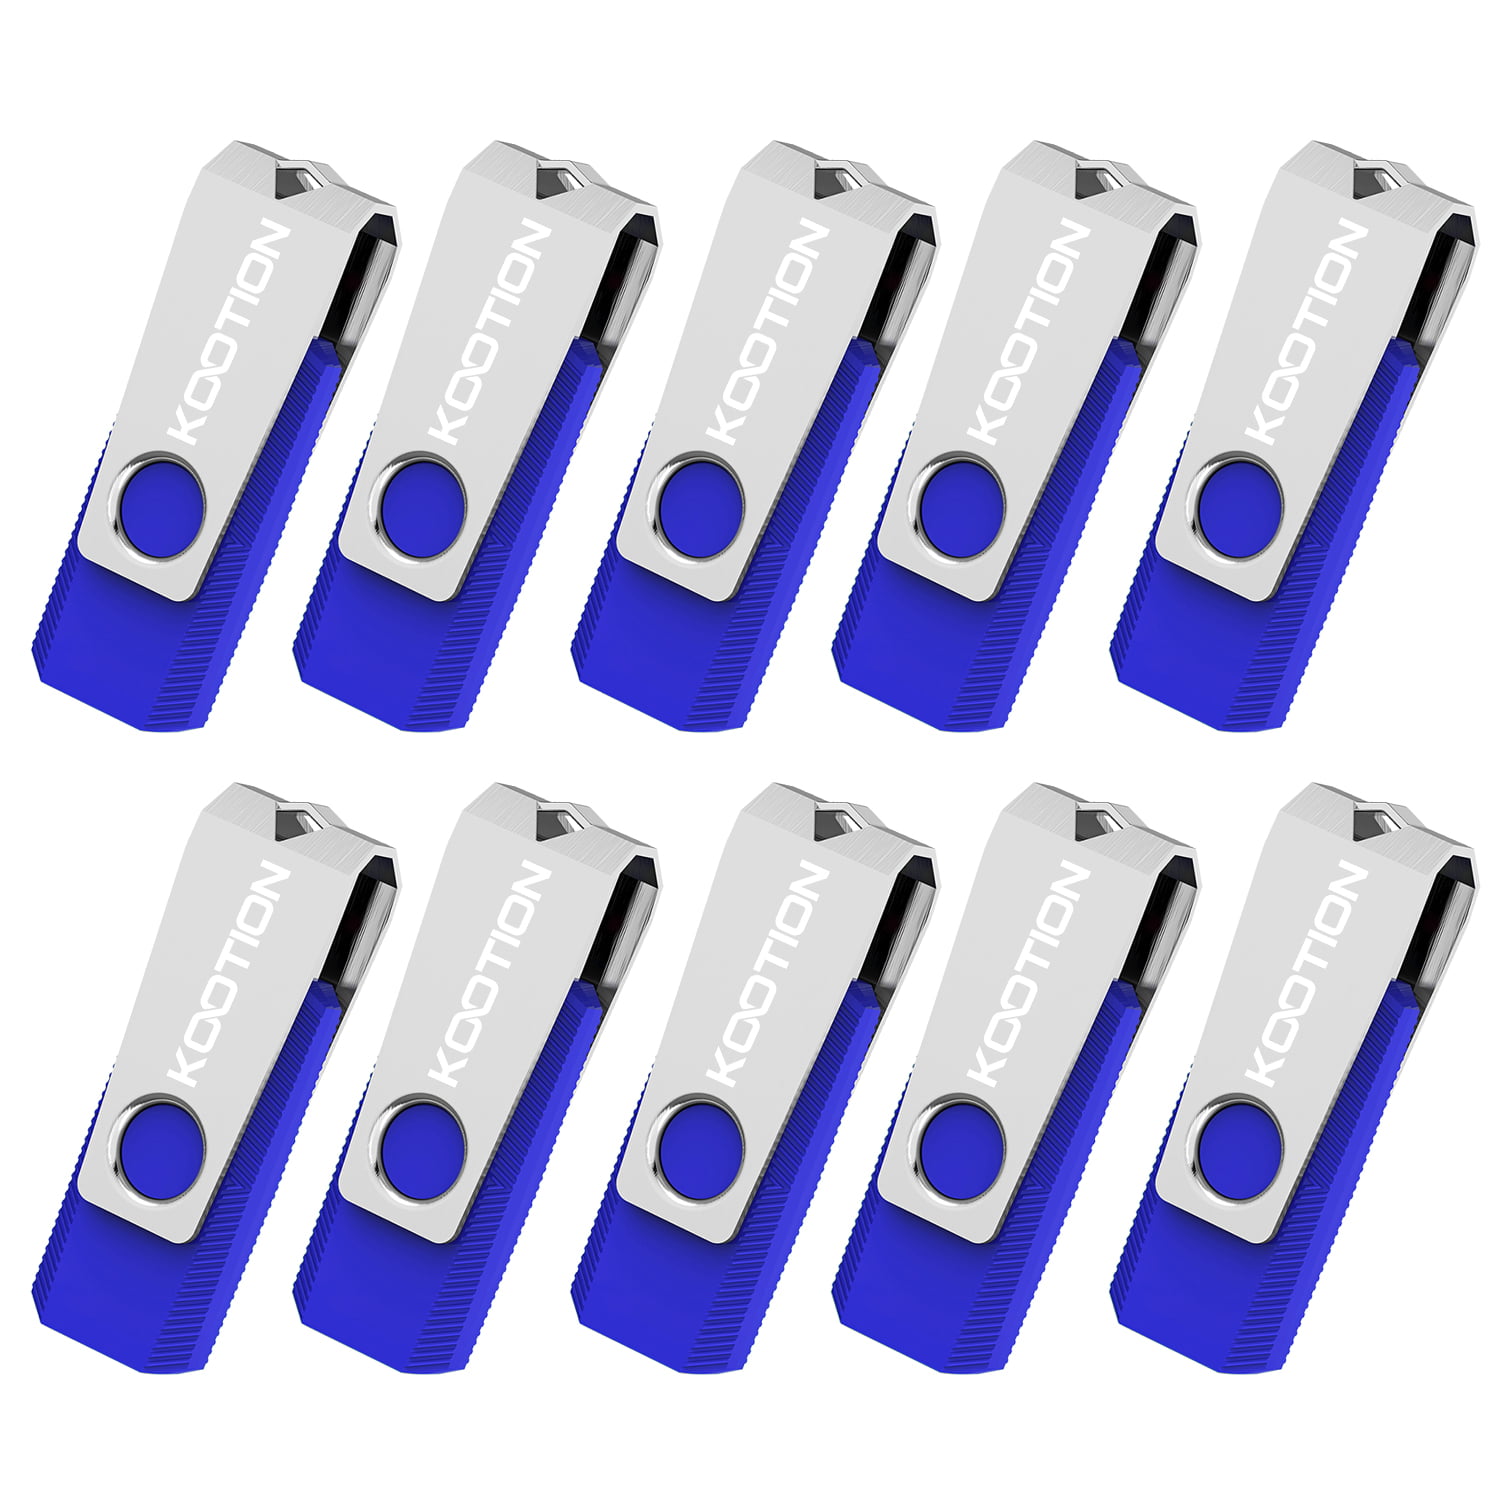 KOOTION 10PCS 1GB USB 2.0 Flash Drive Pen Drives Thumb Stick Flash Memory Drive 